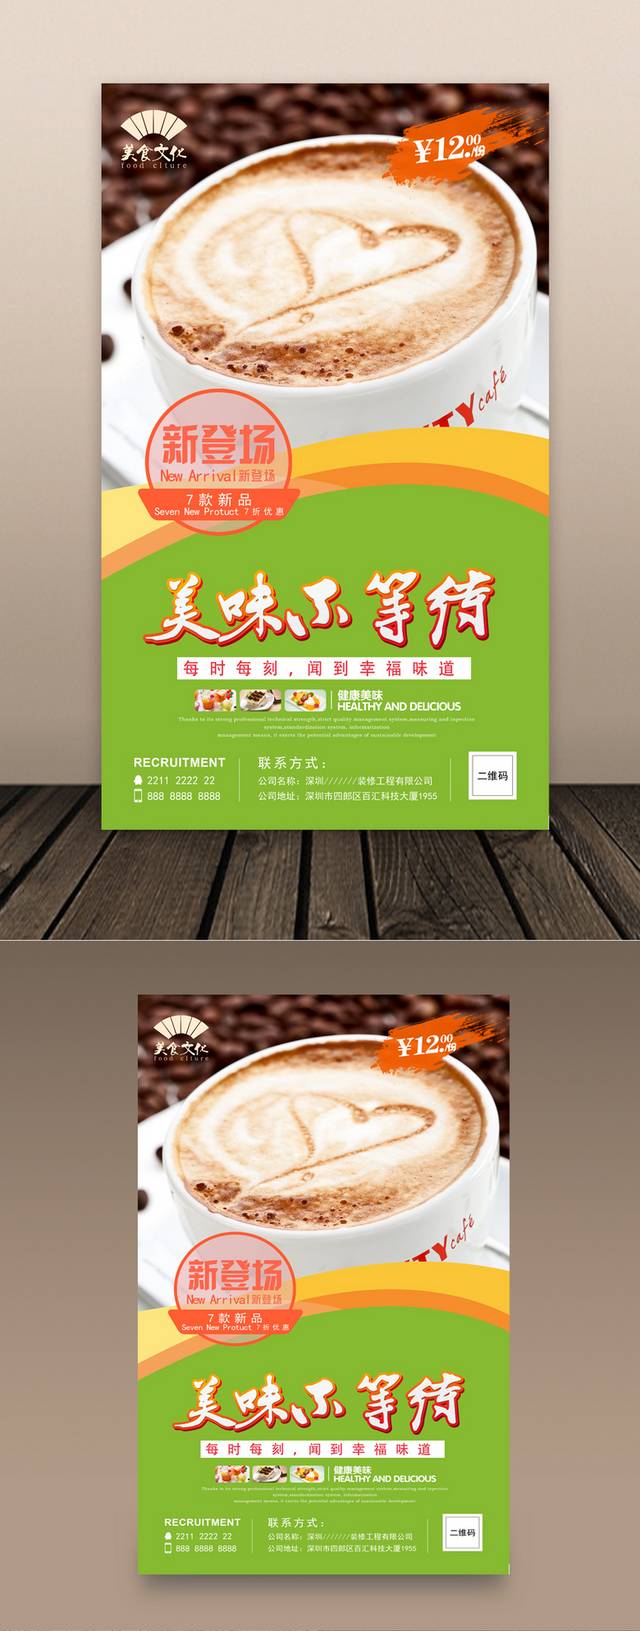 奶茶店美食促销海报高清